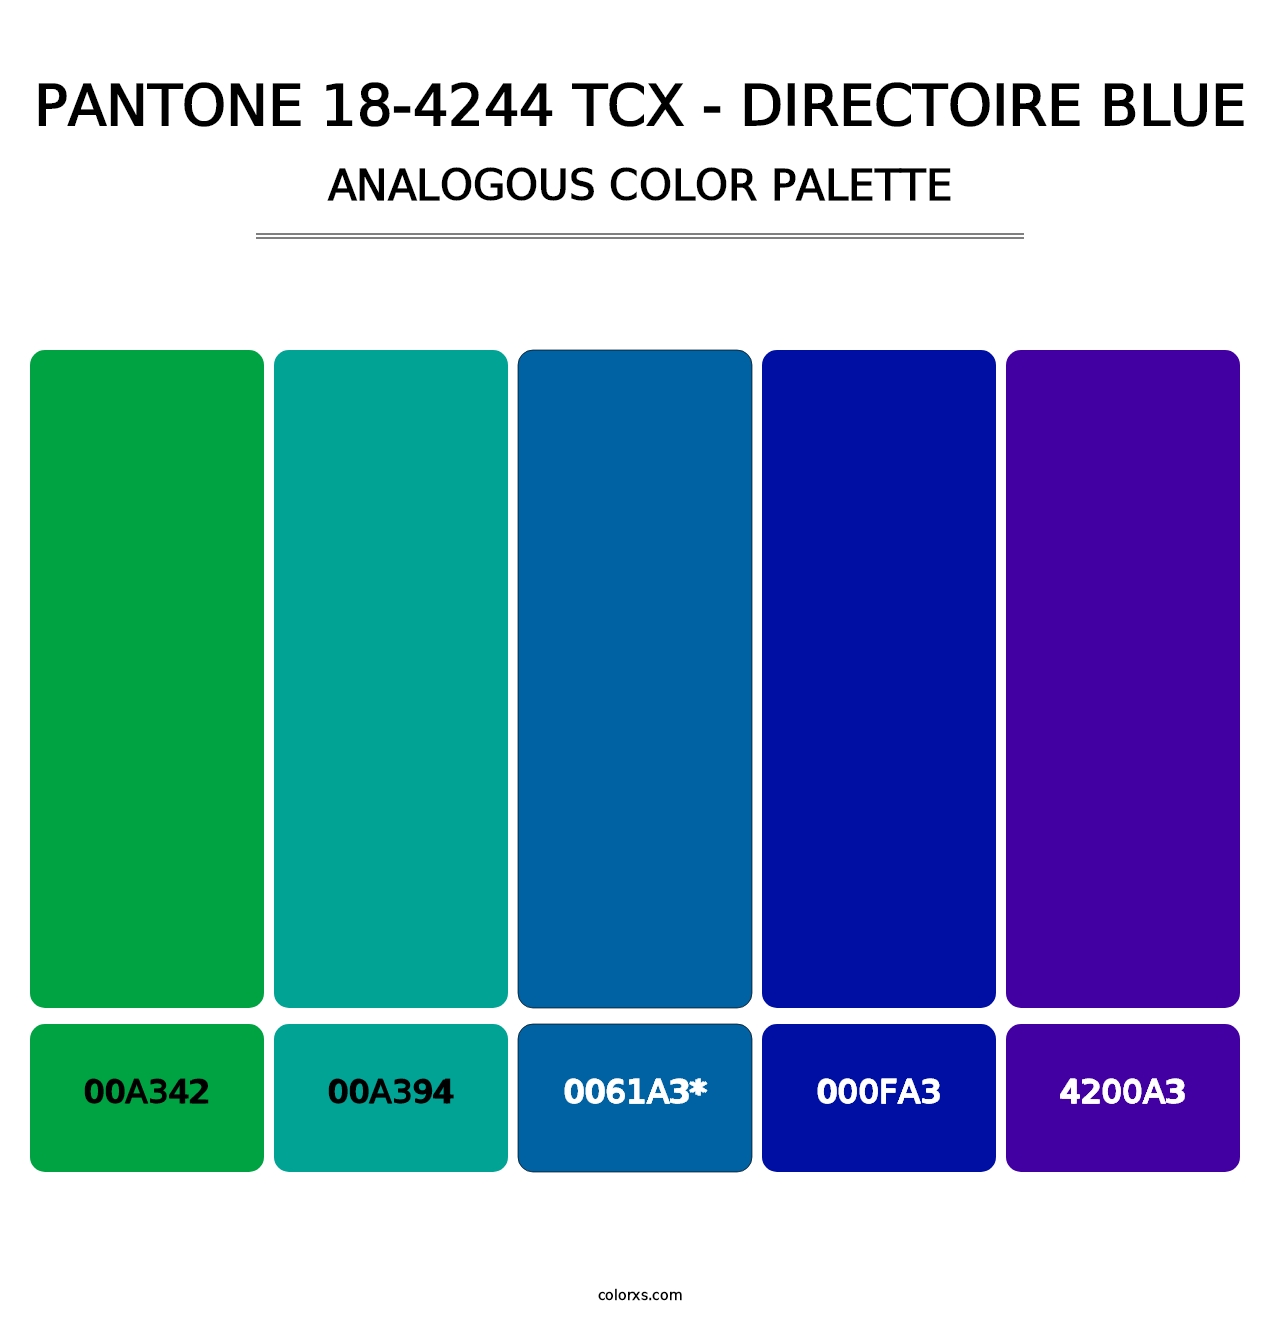 PANTONE 18-4244 TCX - Directoire Blue - Analogous Color Palette